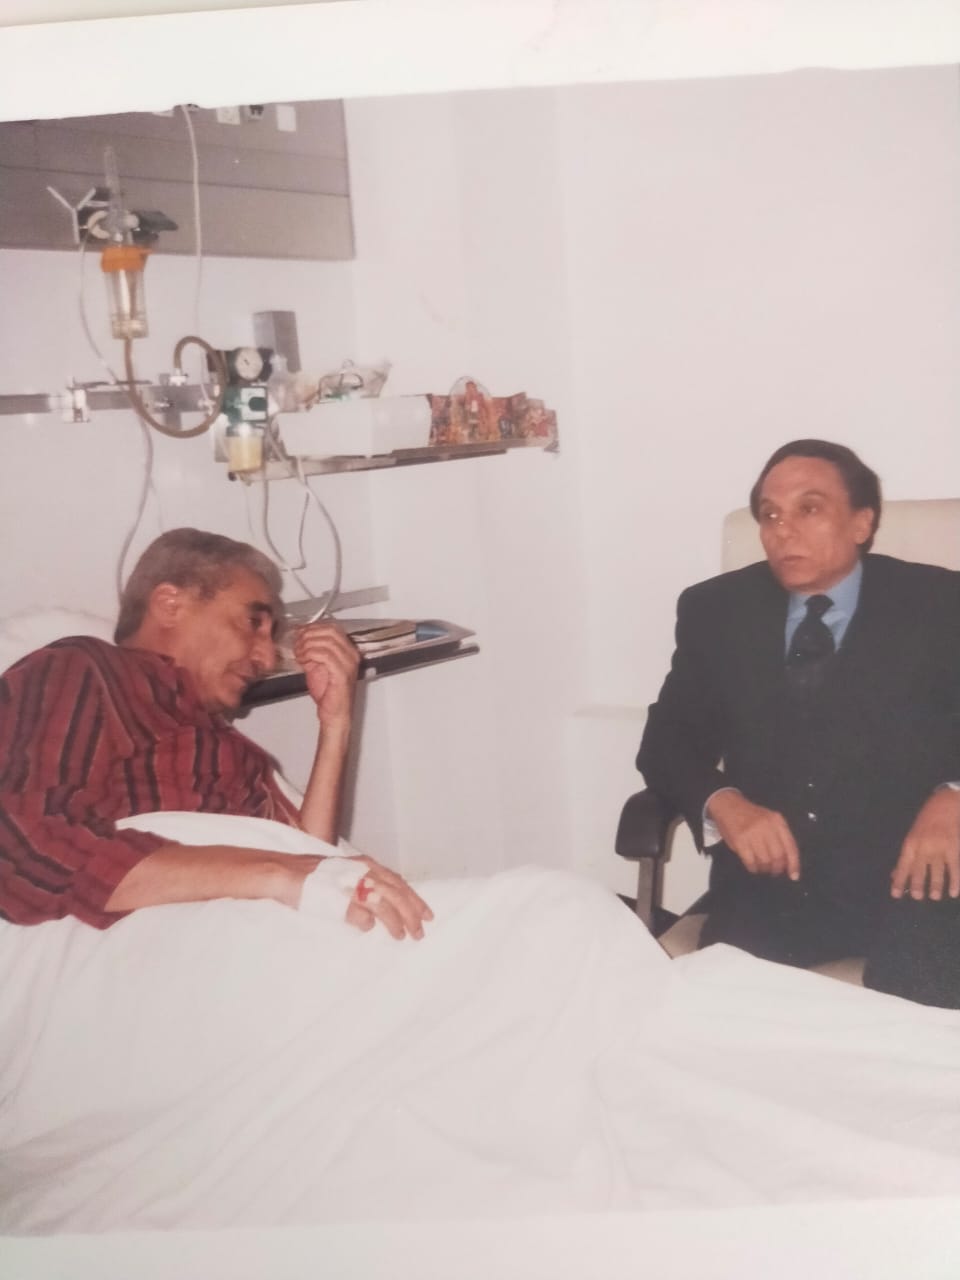 Abnudi with Adel Imam in 1988